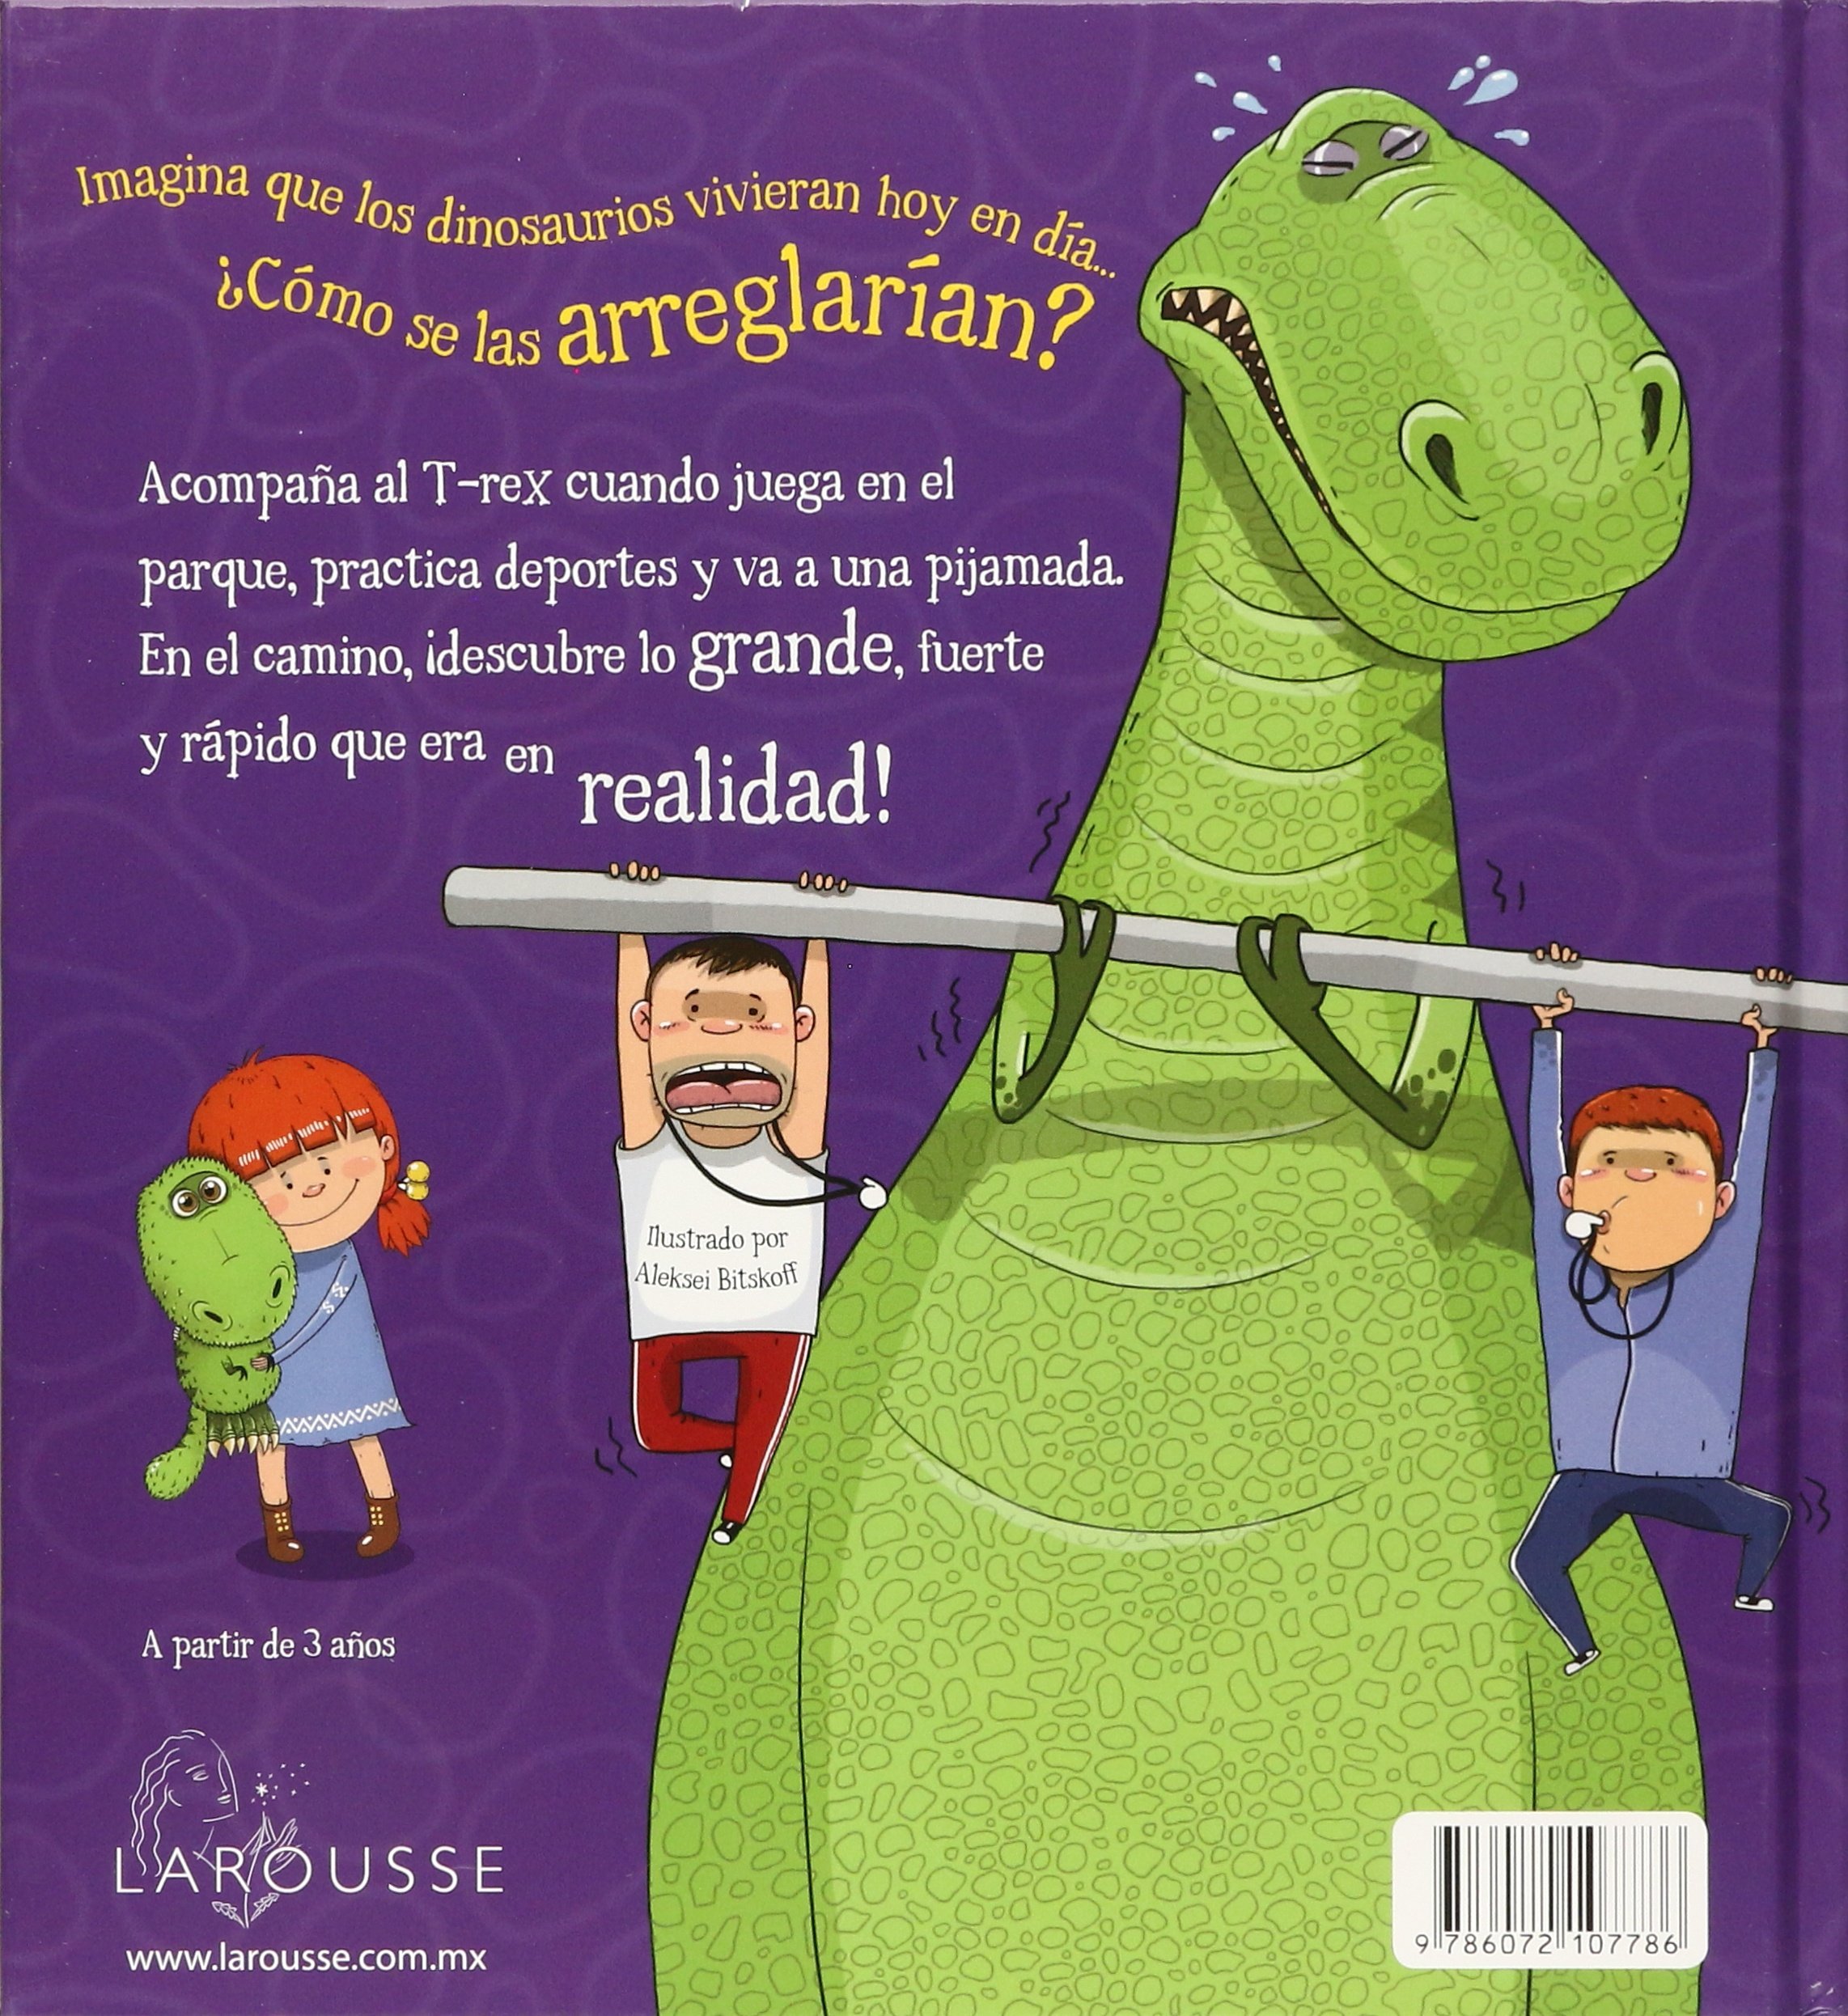 Libro: ¡Increíble! Hay un T-Rex en la Ciudad - Hechos dinosáuricos traídos a la vida Por Mega Ediciones